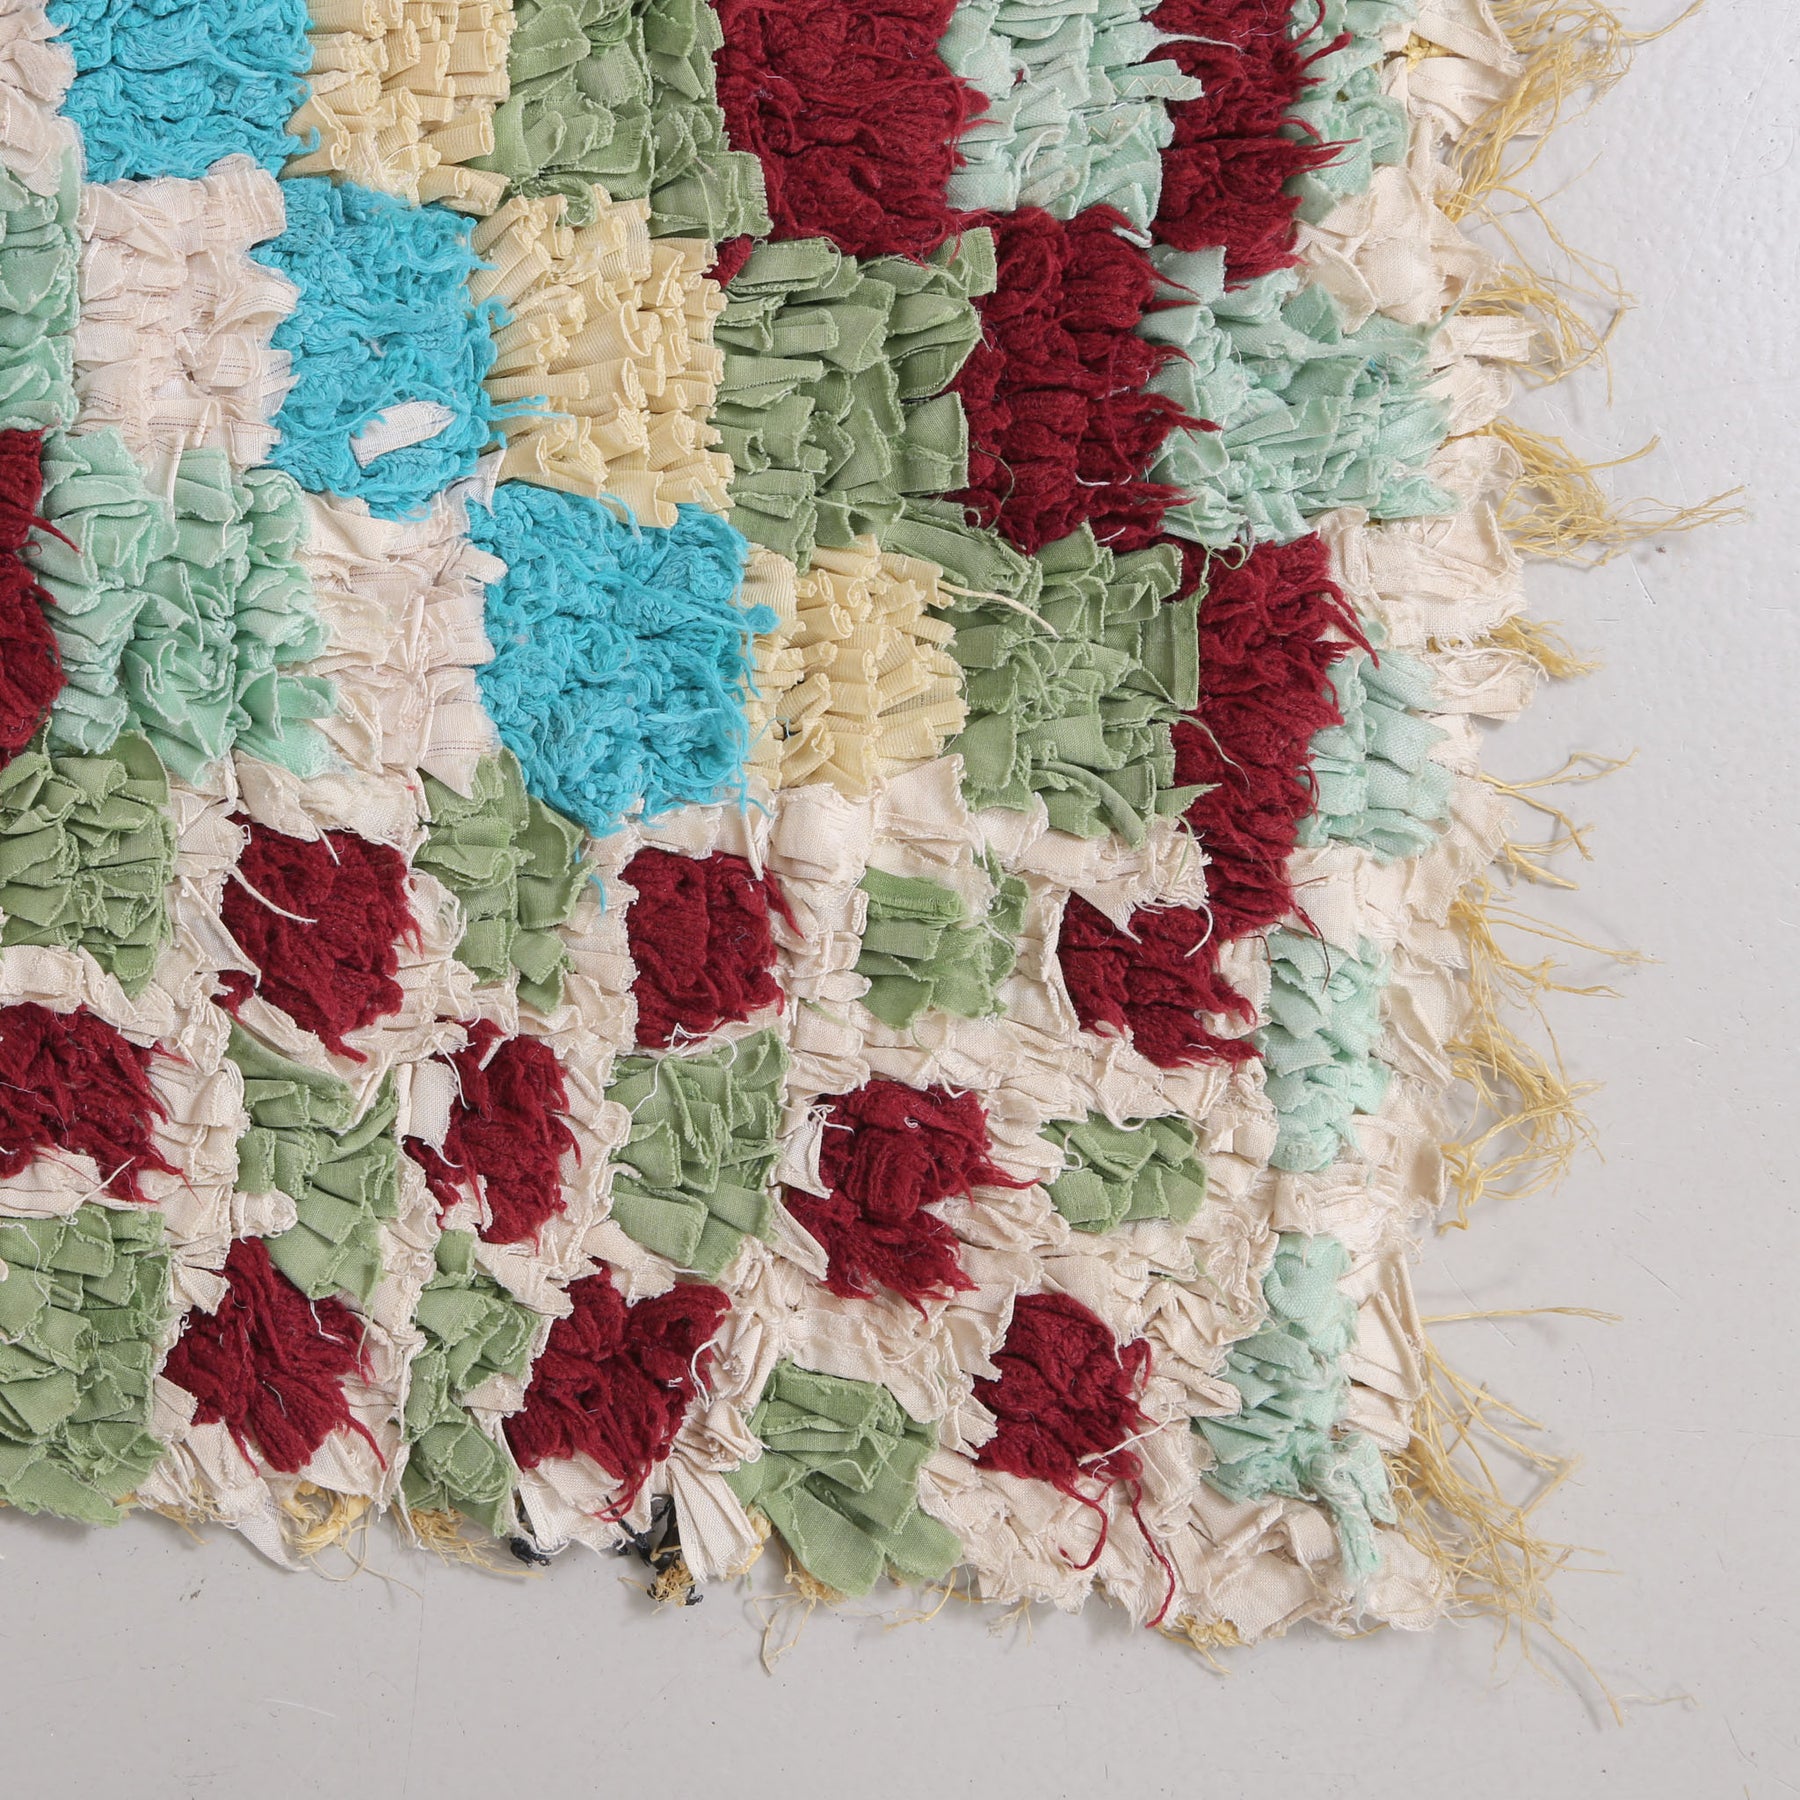 angolo di tappeto zyndech con tessuti di diversi colori che formano dei quadrati annodati su un sacco di plastica